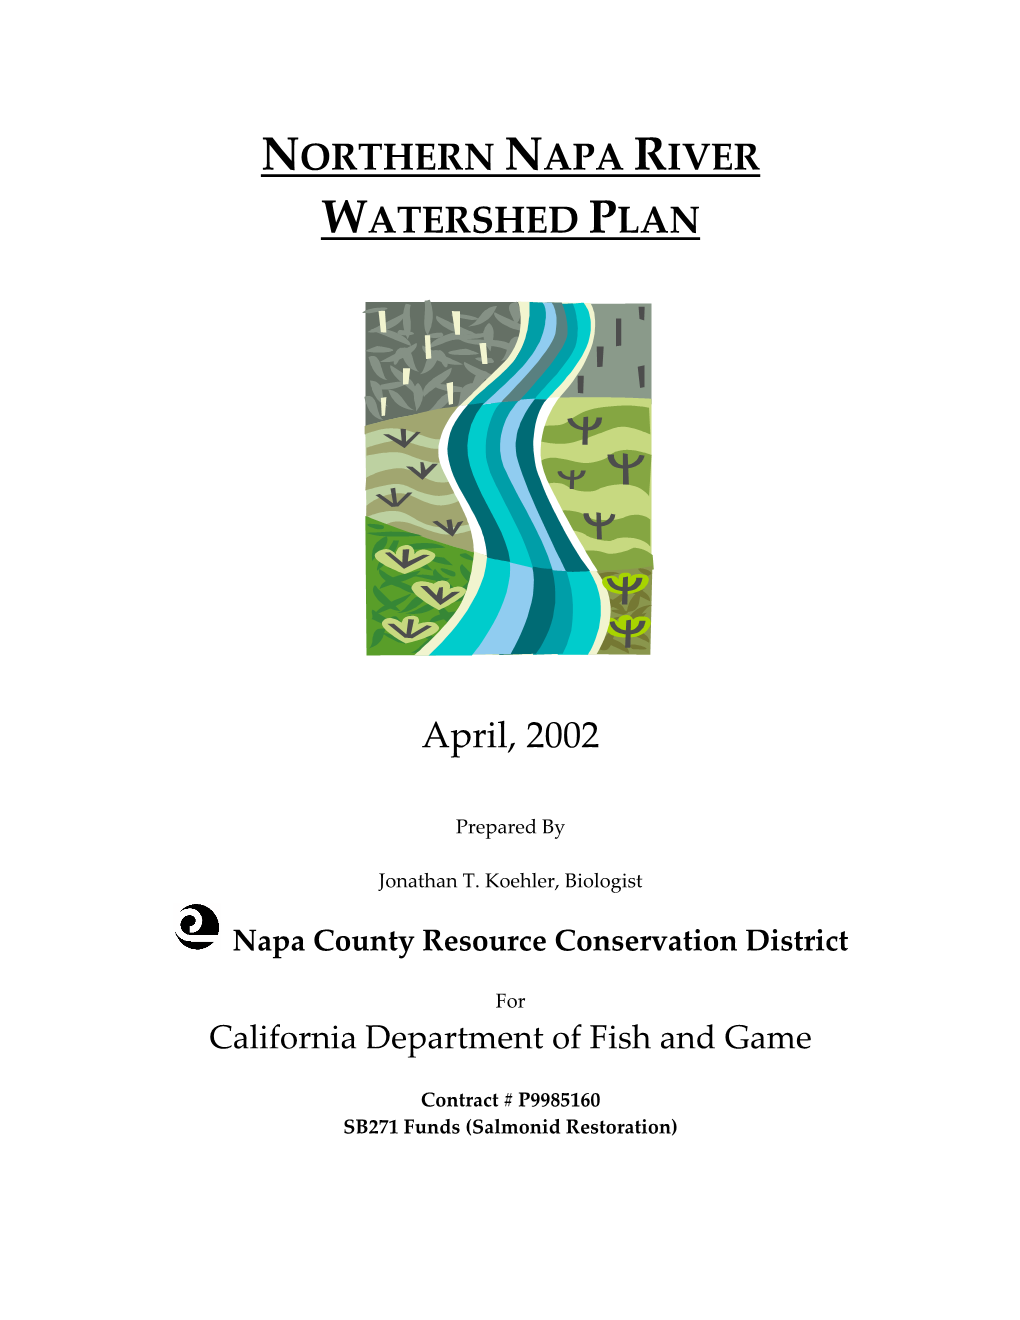 Northern Napa River Watershed Plan